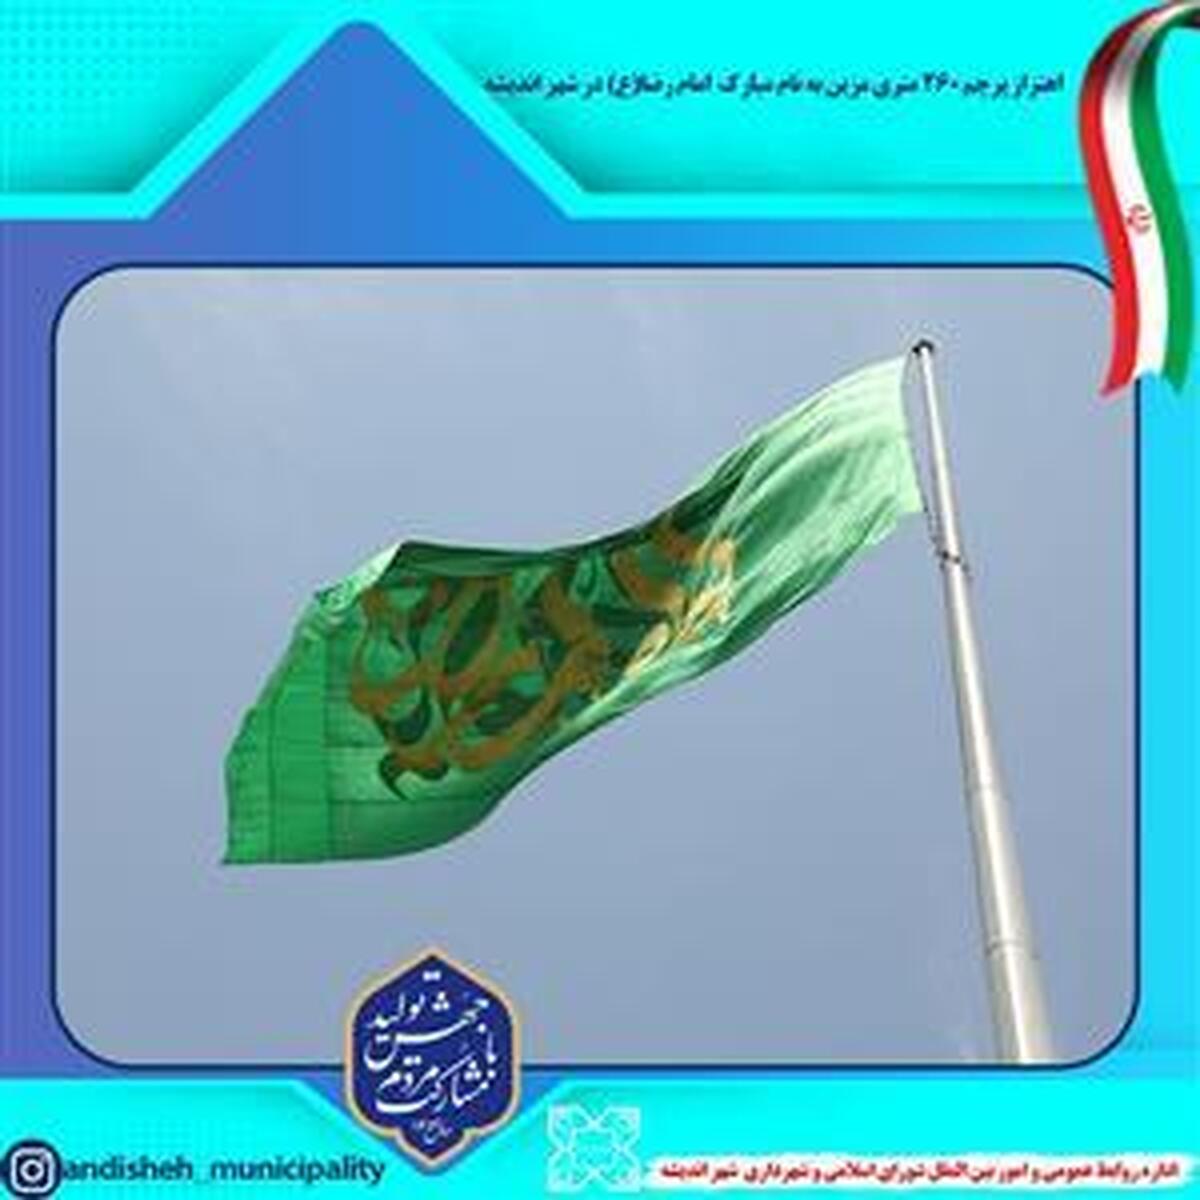 اهتزاز پرچم ۲۶۰ متری مزین به نام مبارك  امام رضا (ع) در شهر اندیشه